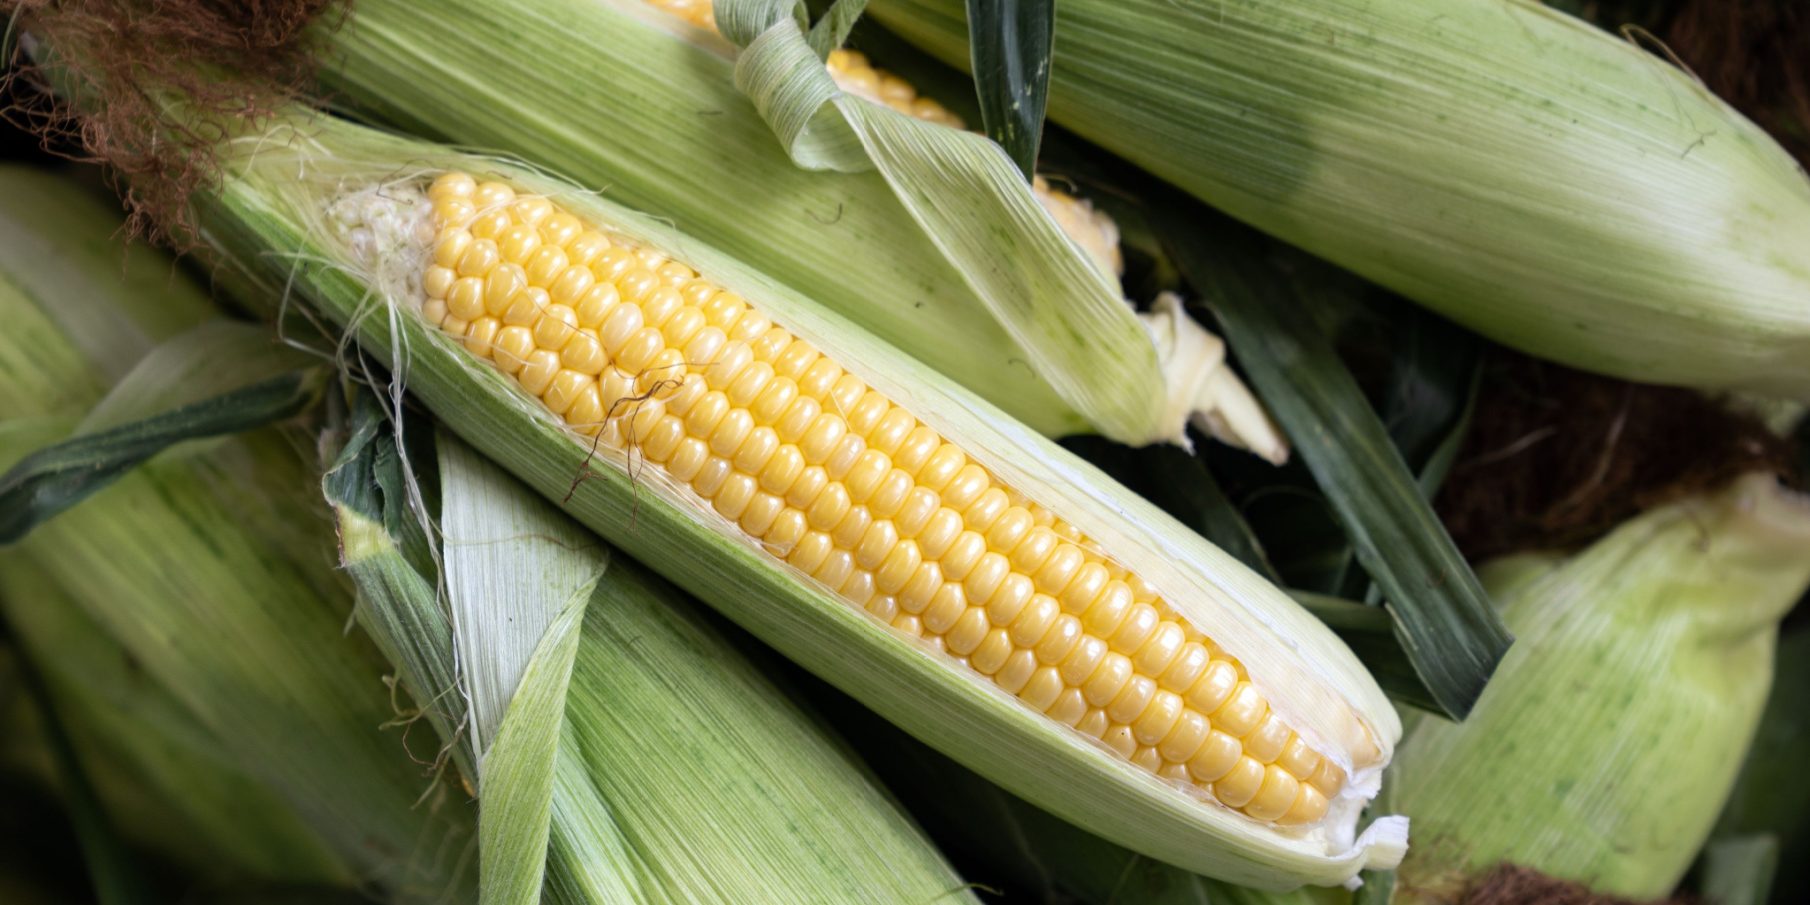 Как правильно и сколько варить кукурузу